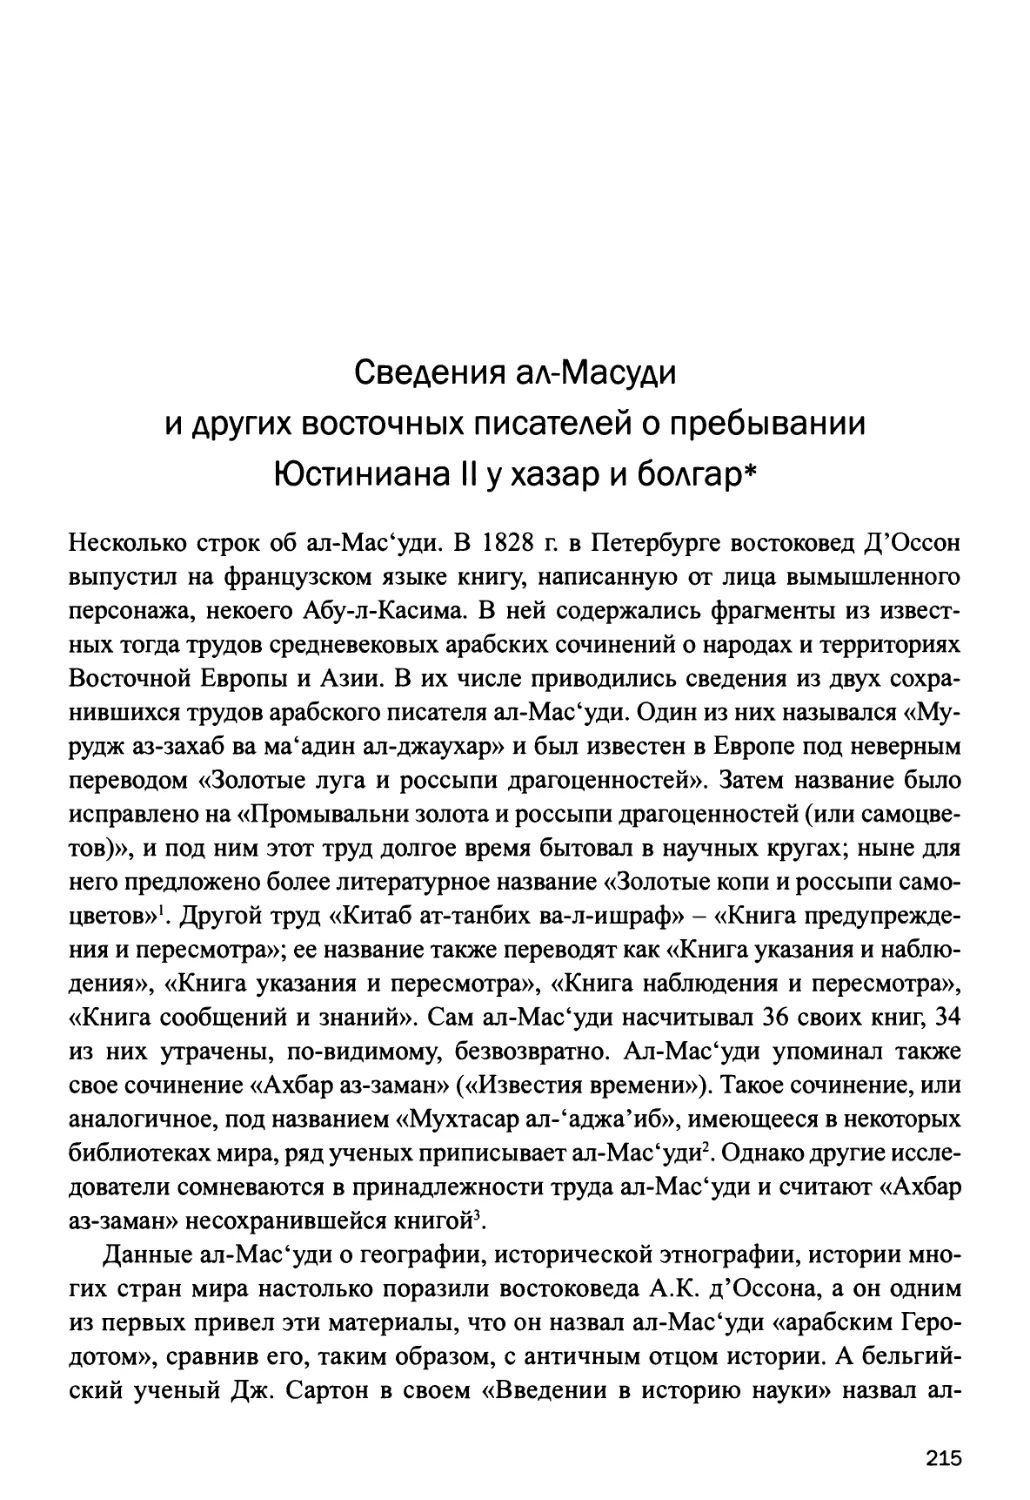 Сведения ал-Мас'уди и других восточных писателей о пребывании Юстиниана II у хазар и болгар